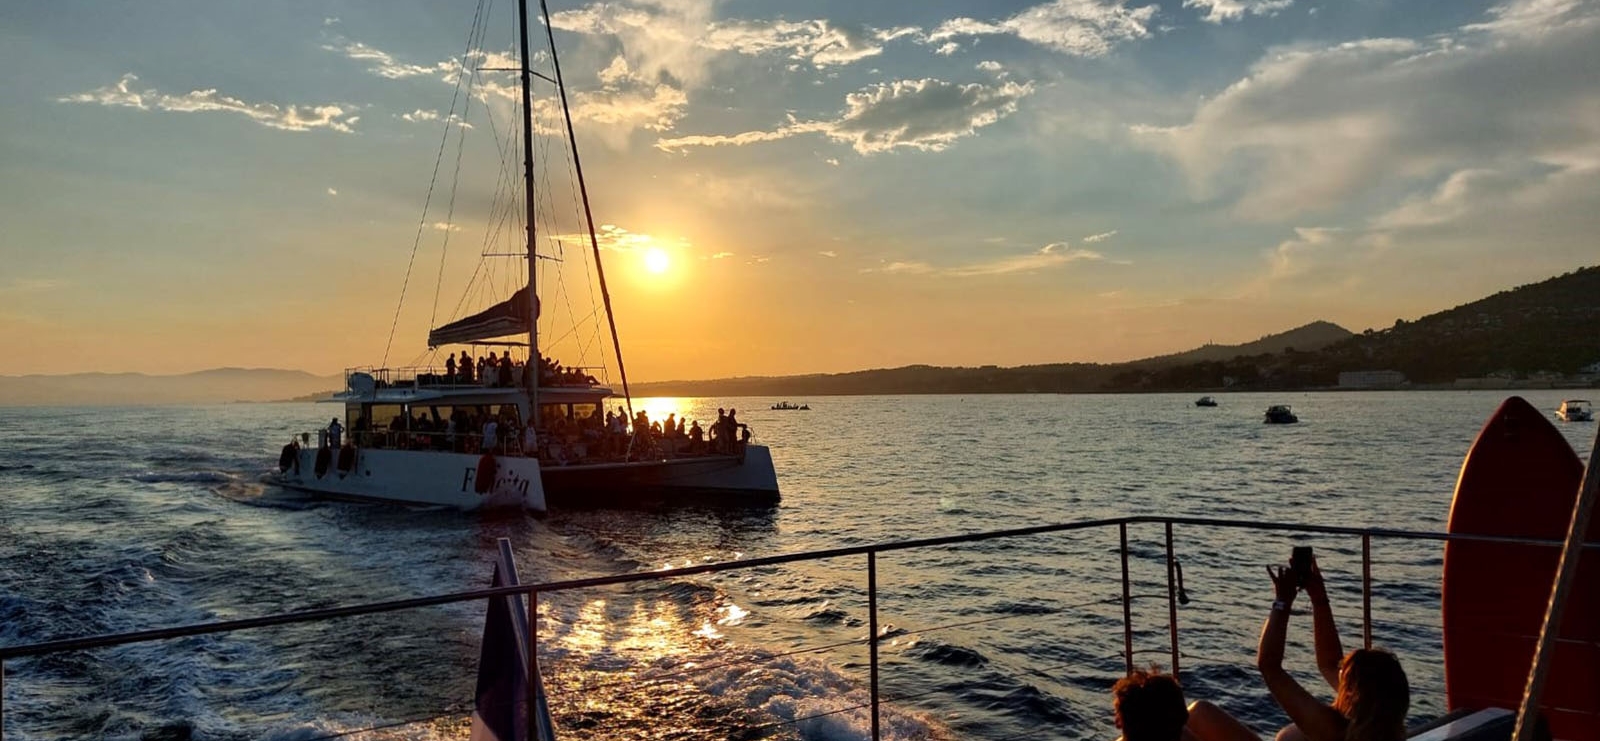 Excursion en catamaran - Coucher de soleil - AMC Cape Grace